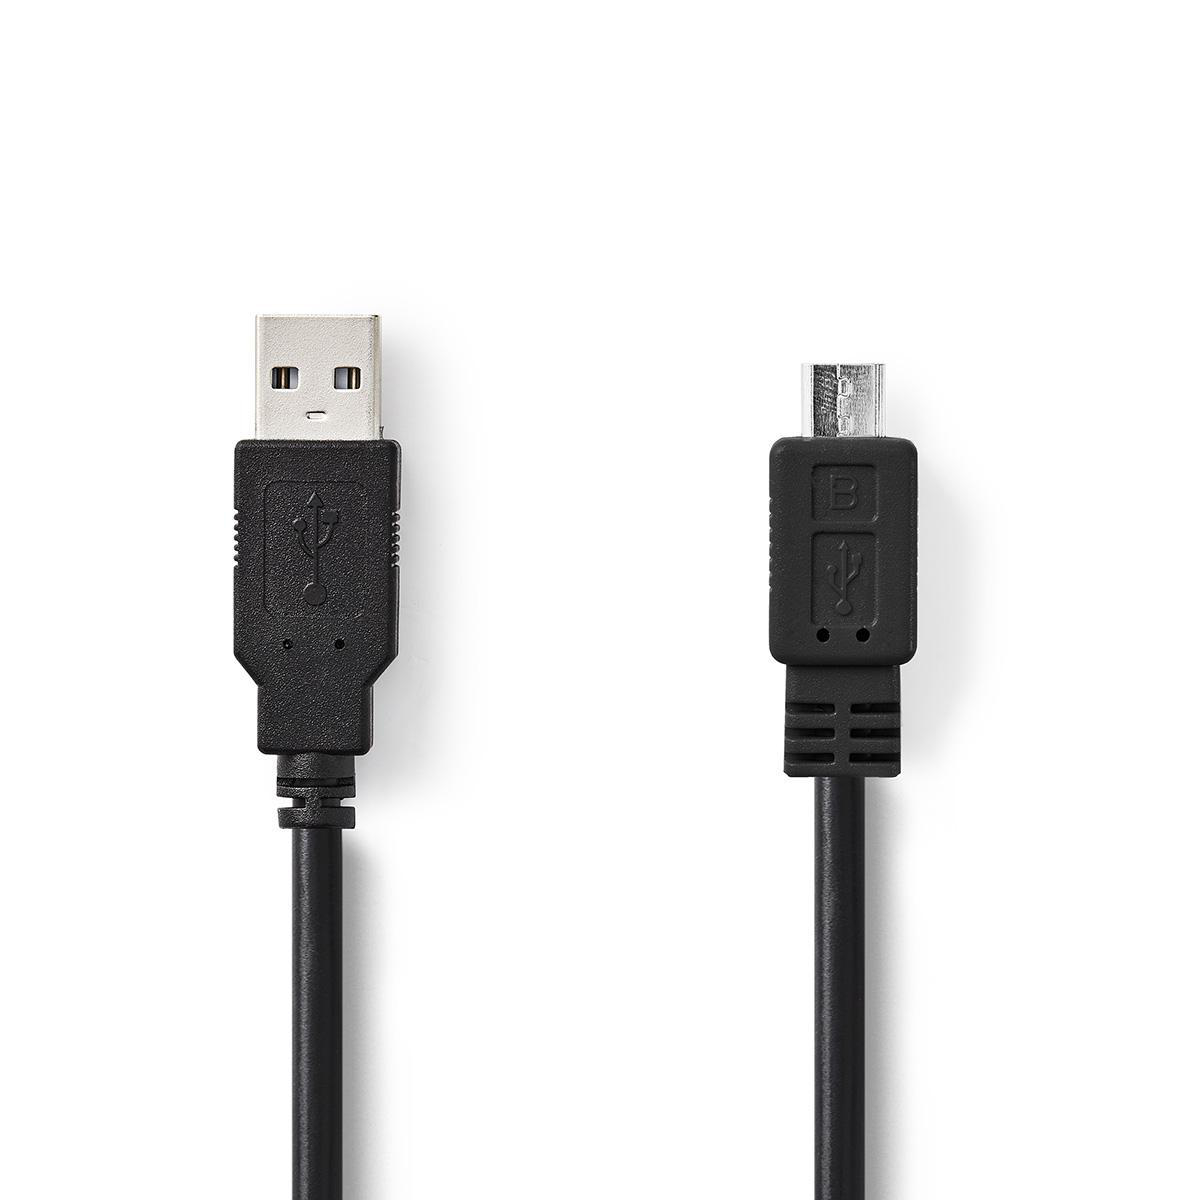 NEDIS USB 2.0 kabel | Zástrčka A – Micro B Zástrčka | 1 m | Černá barva